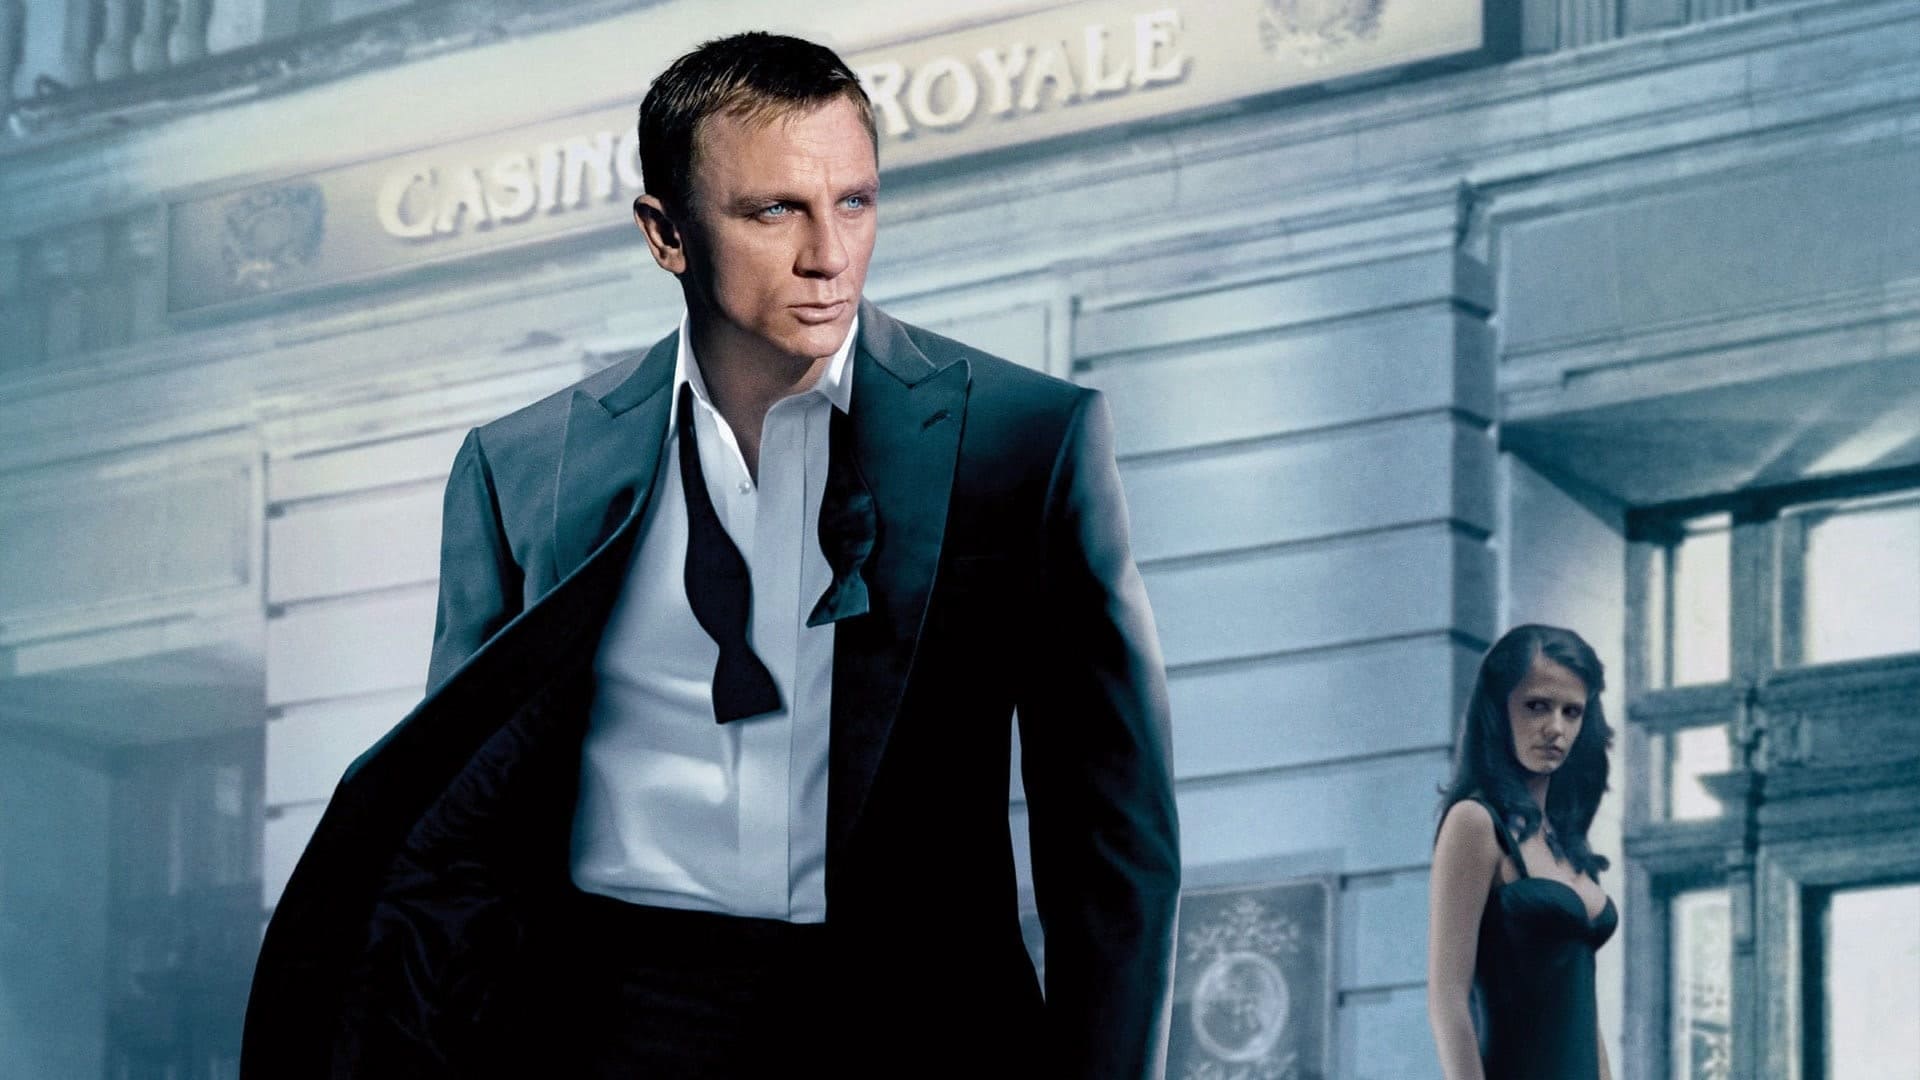 агент 007 казино рояль трейлер на русском